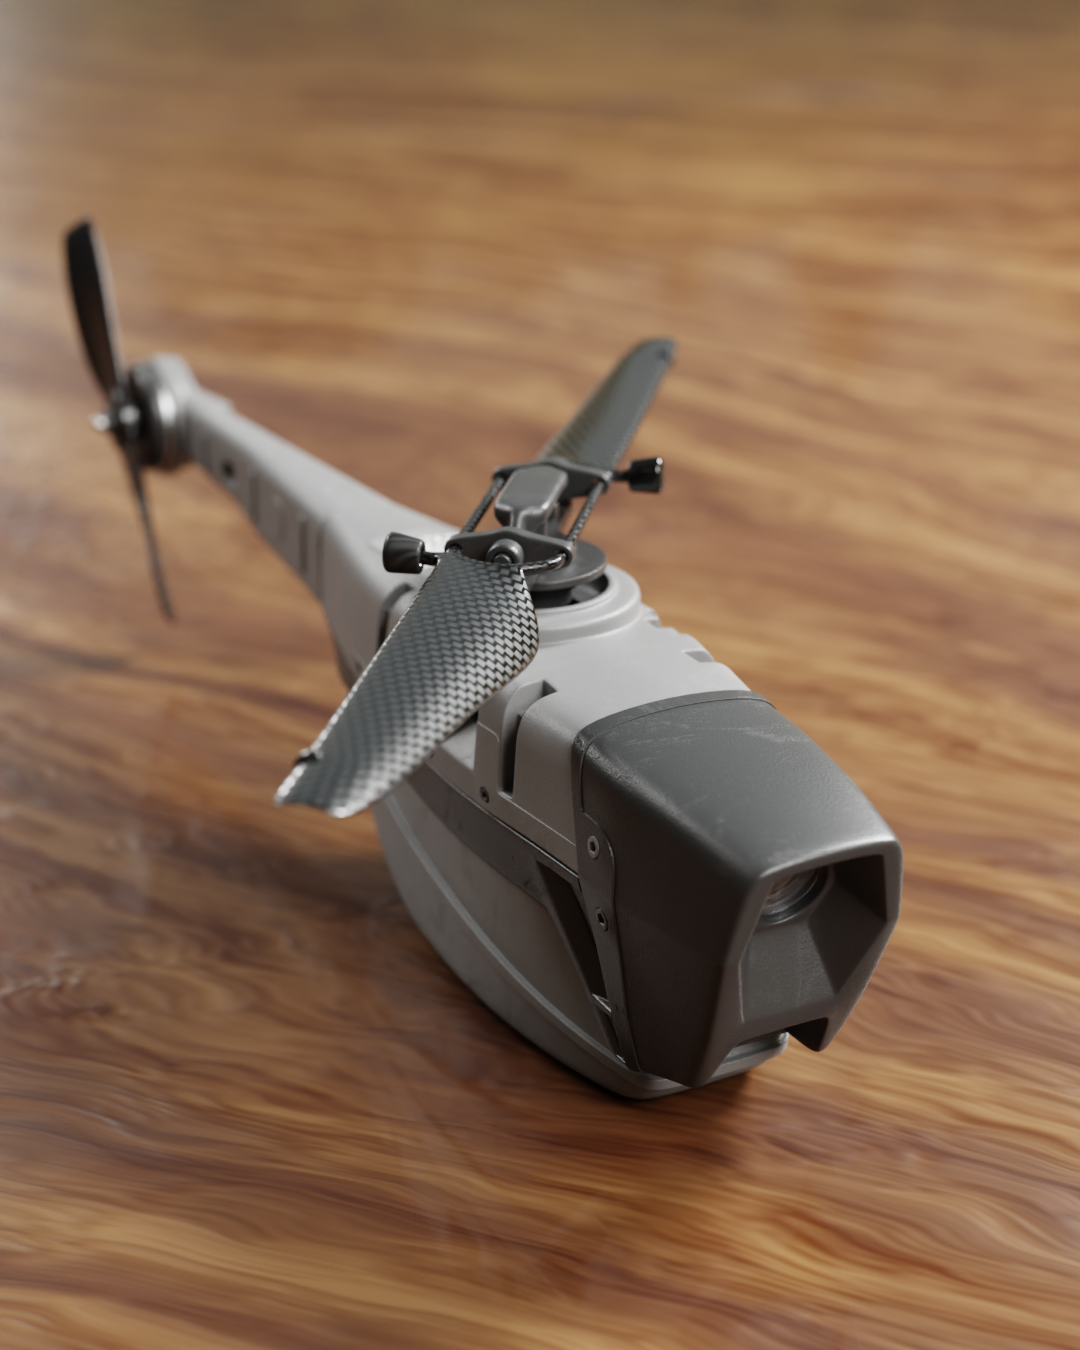 bundet Skulptur Tæller insekter Black Hornet nano drone - Finished Projects - Blender Artists Community